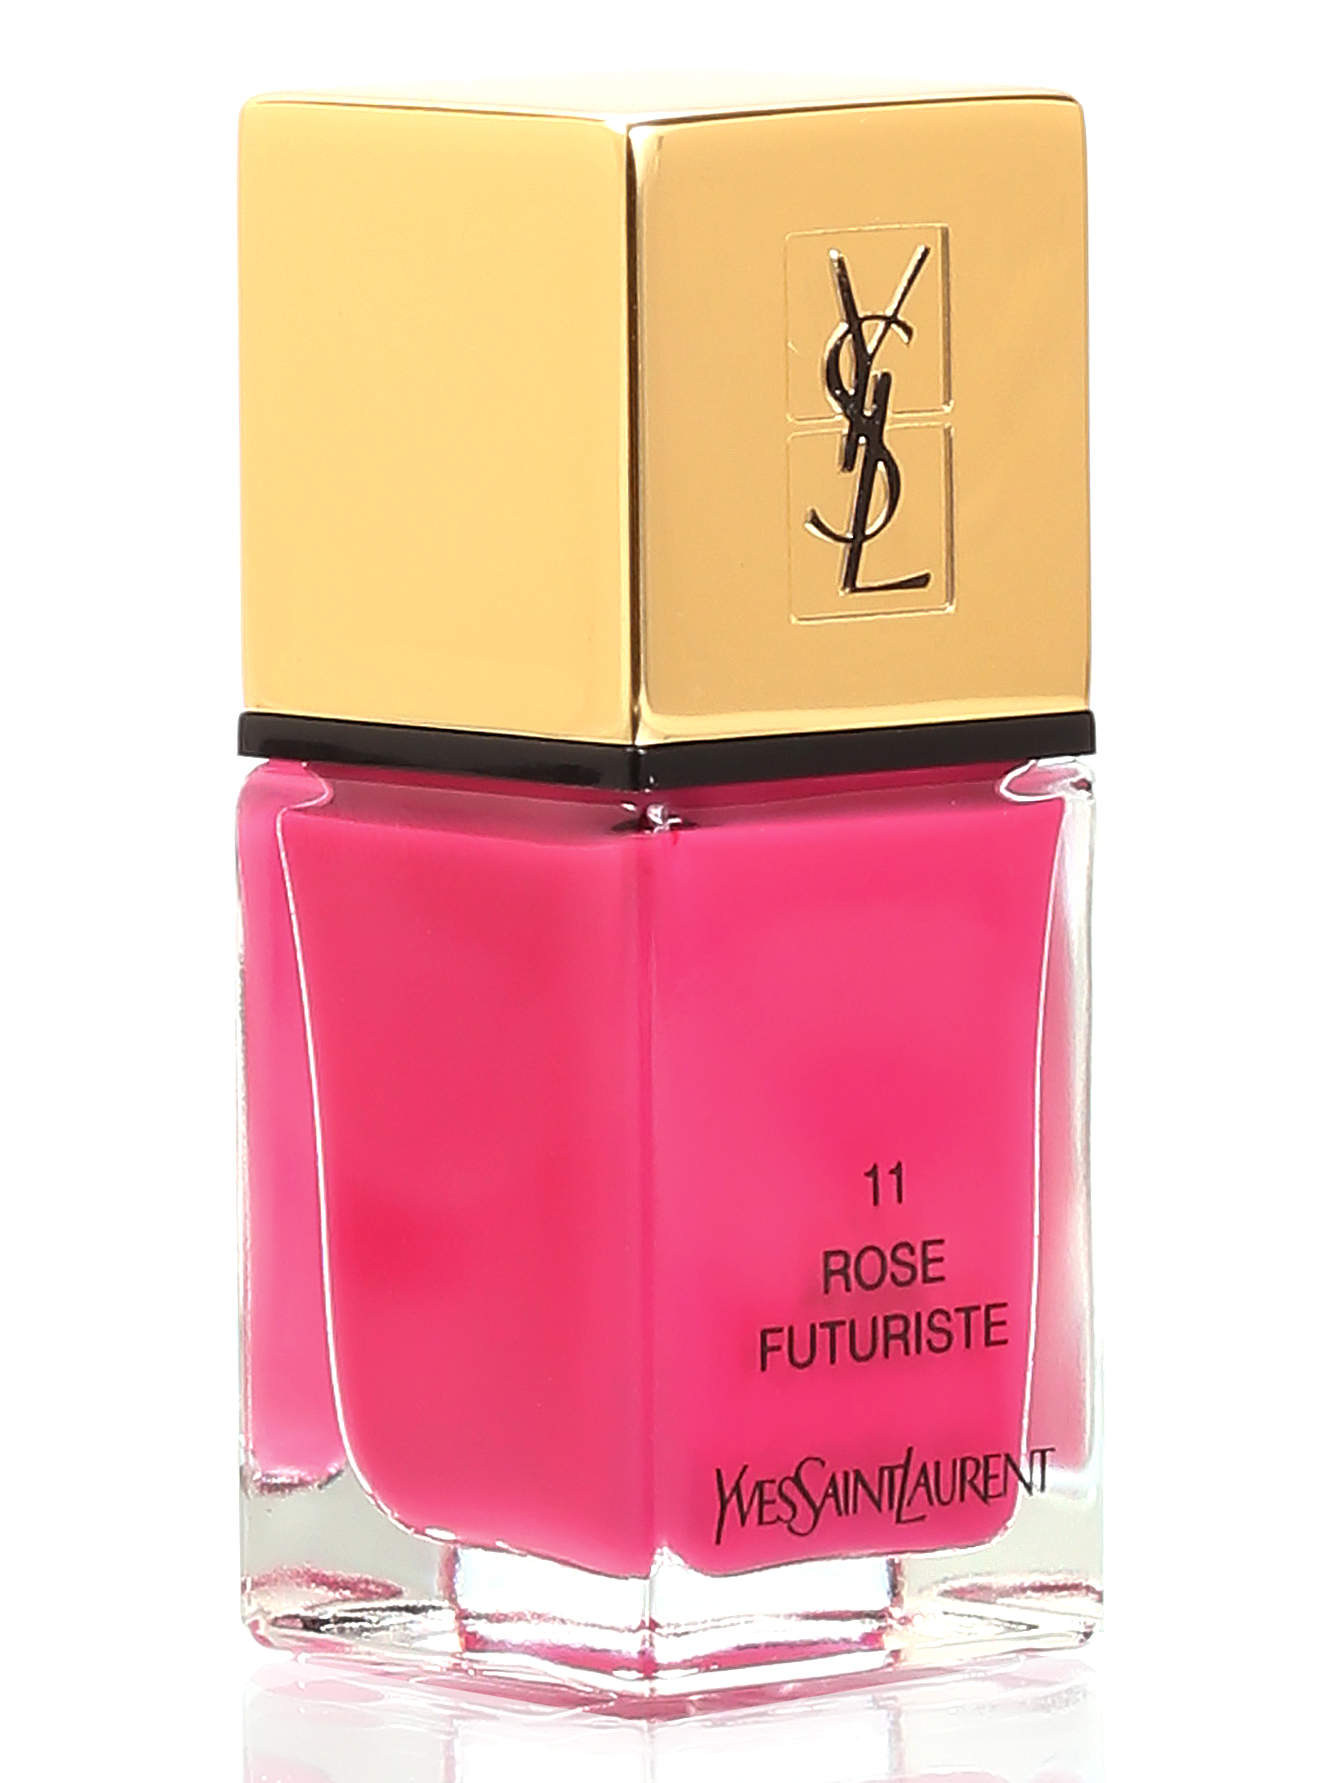 Лак для ногтей - №11 Rose futuriste, La Laque Couture, 10ml - Общий вид